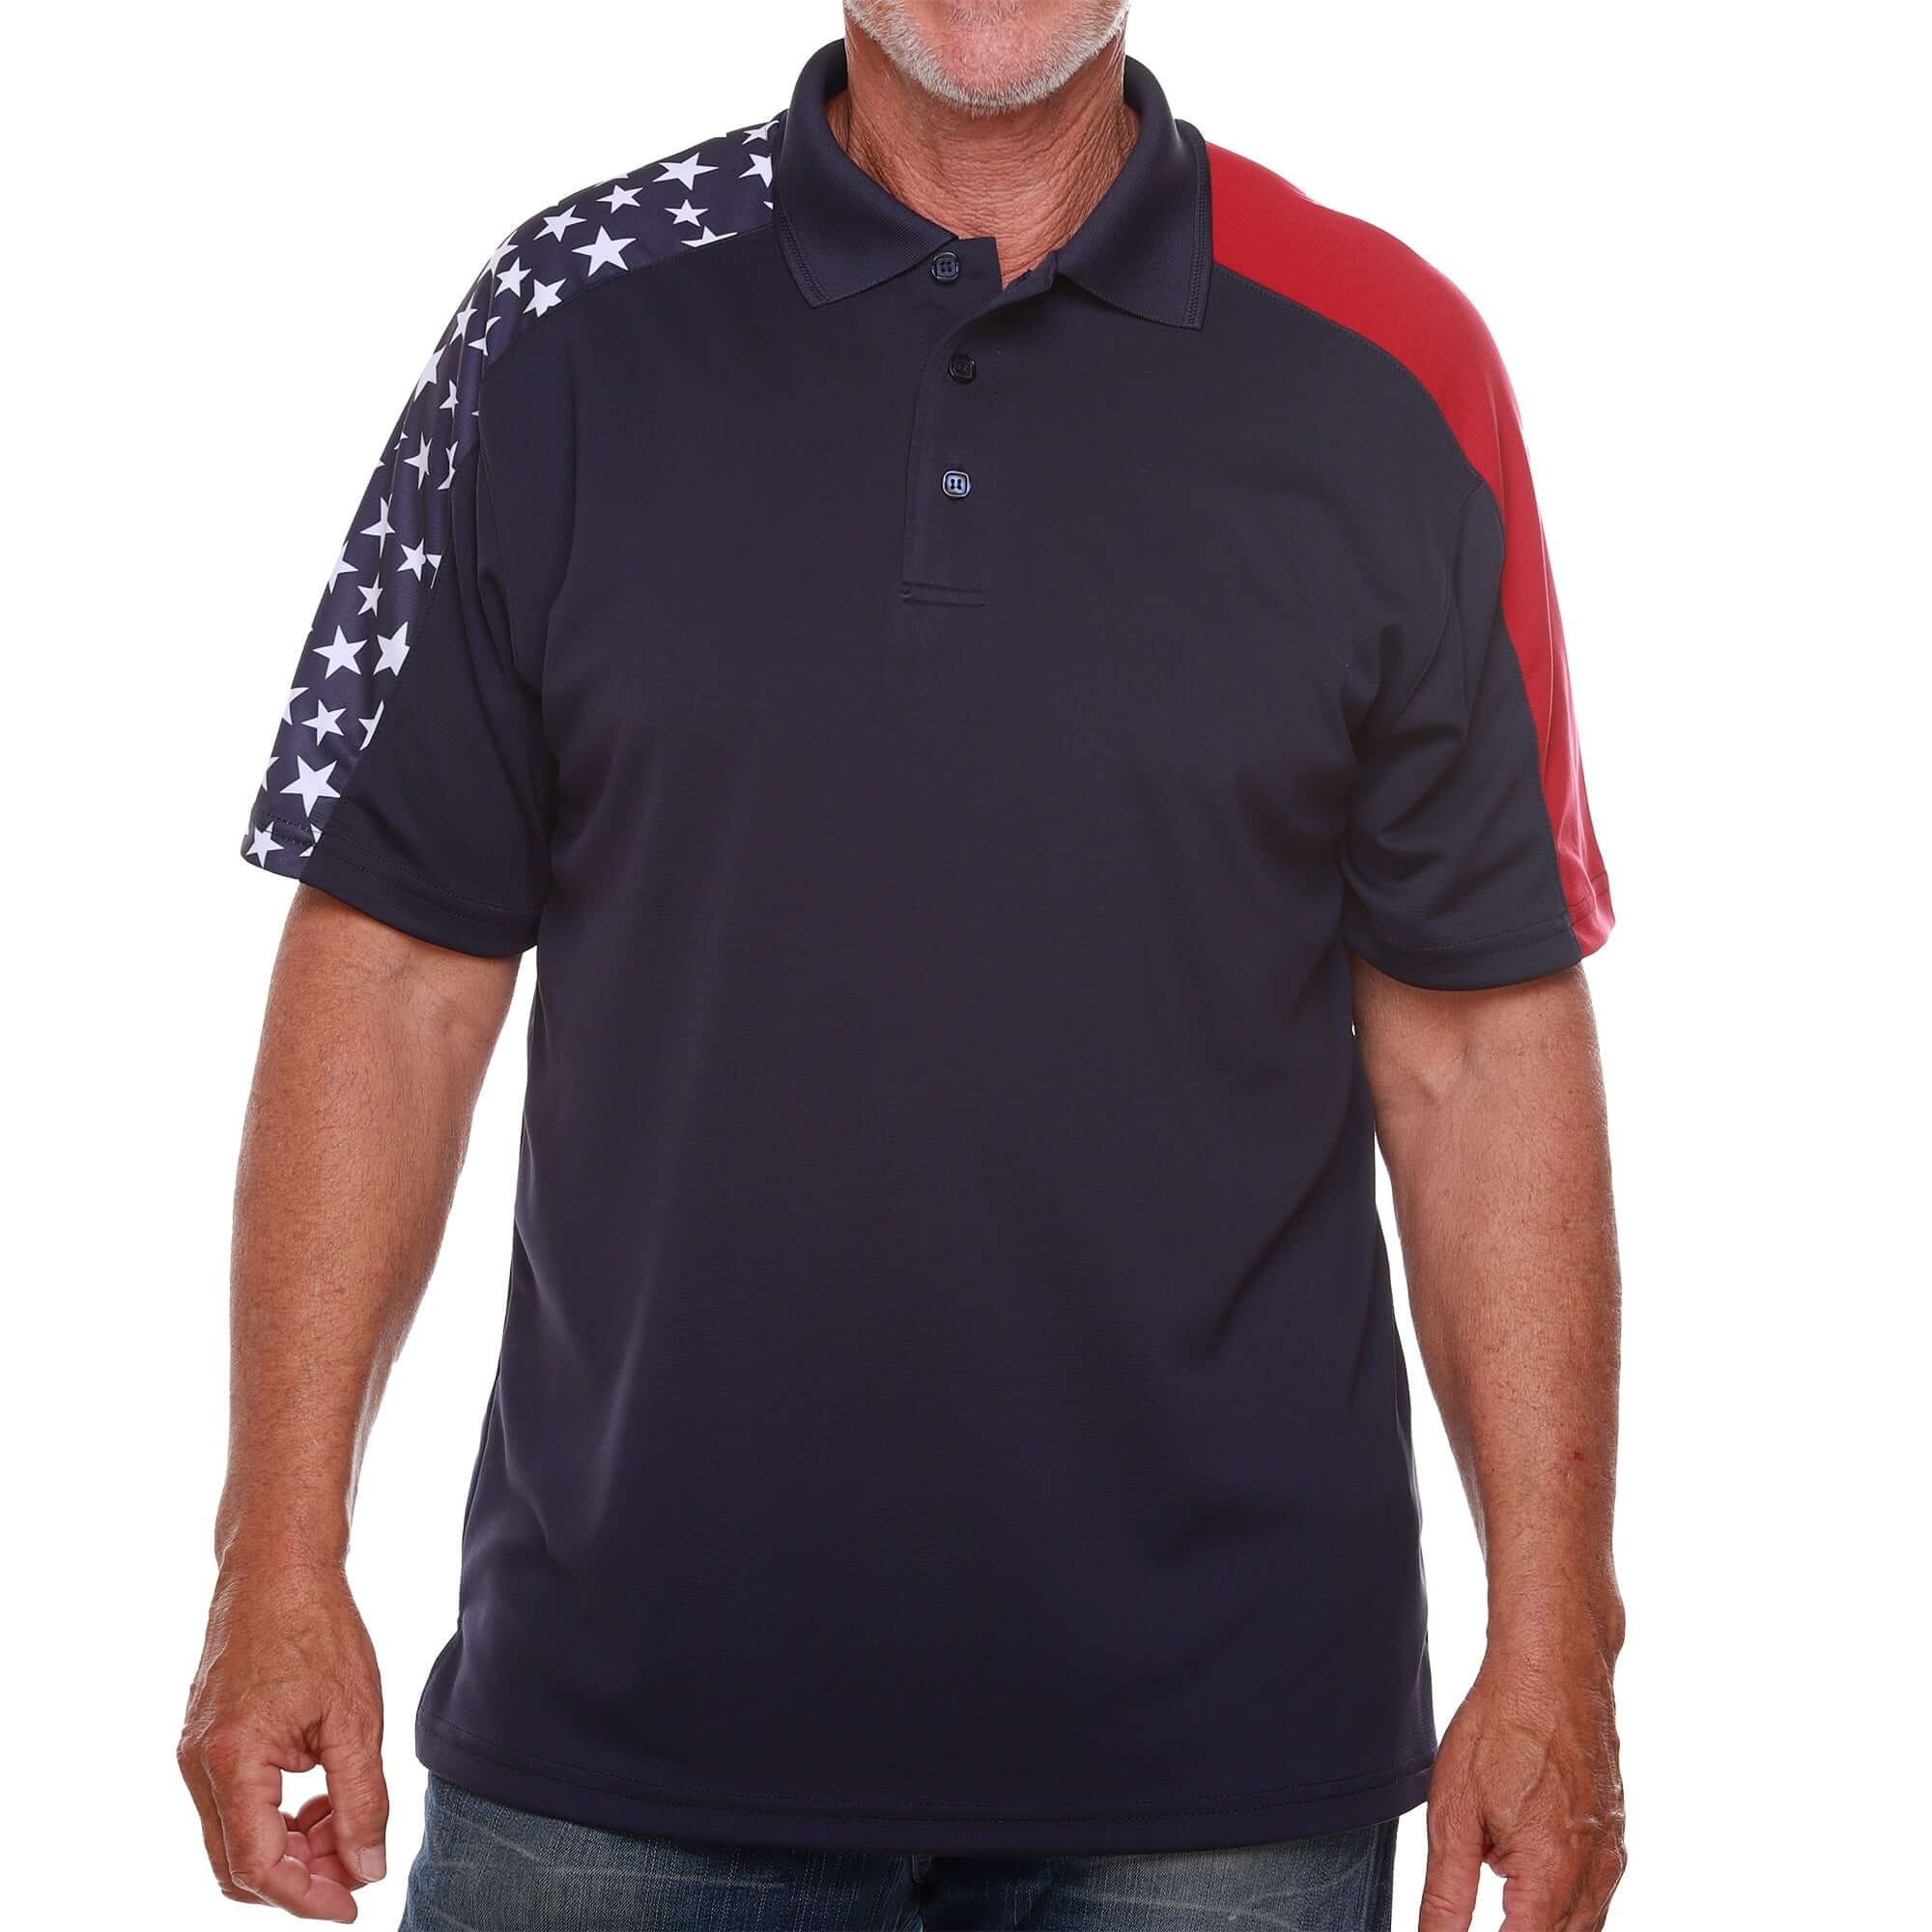 Men's Made in USA Patriotic Tech Polo Shirt